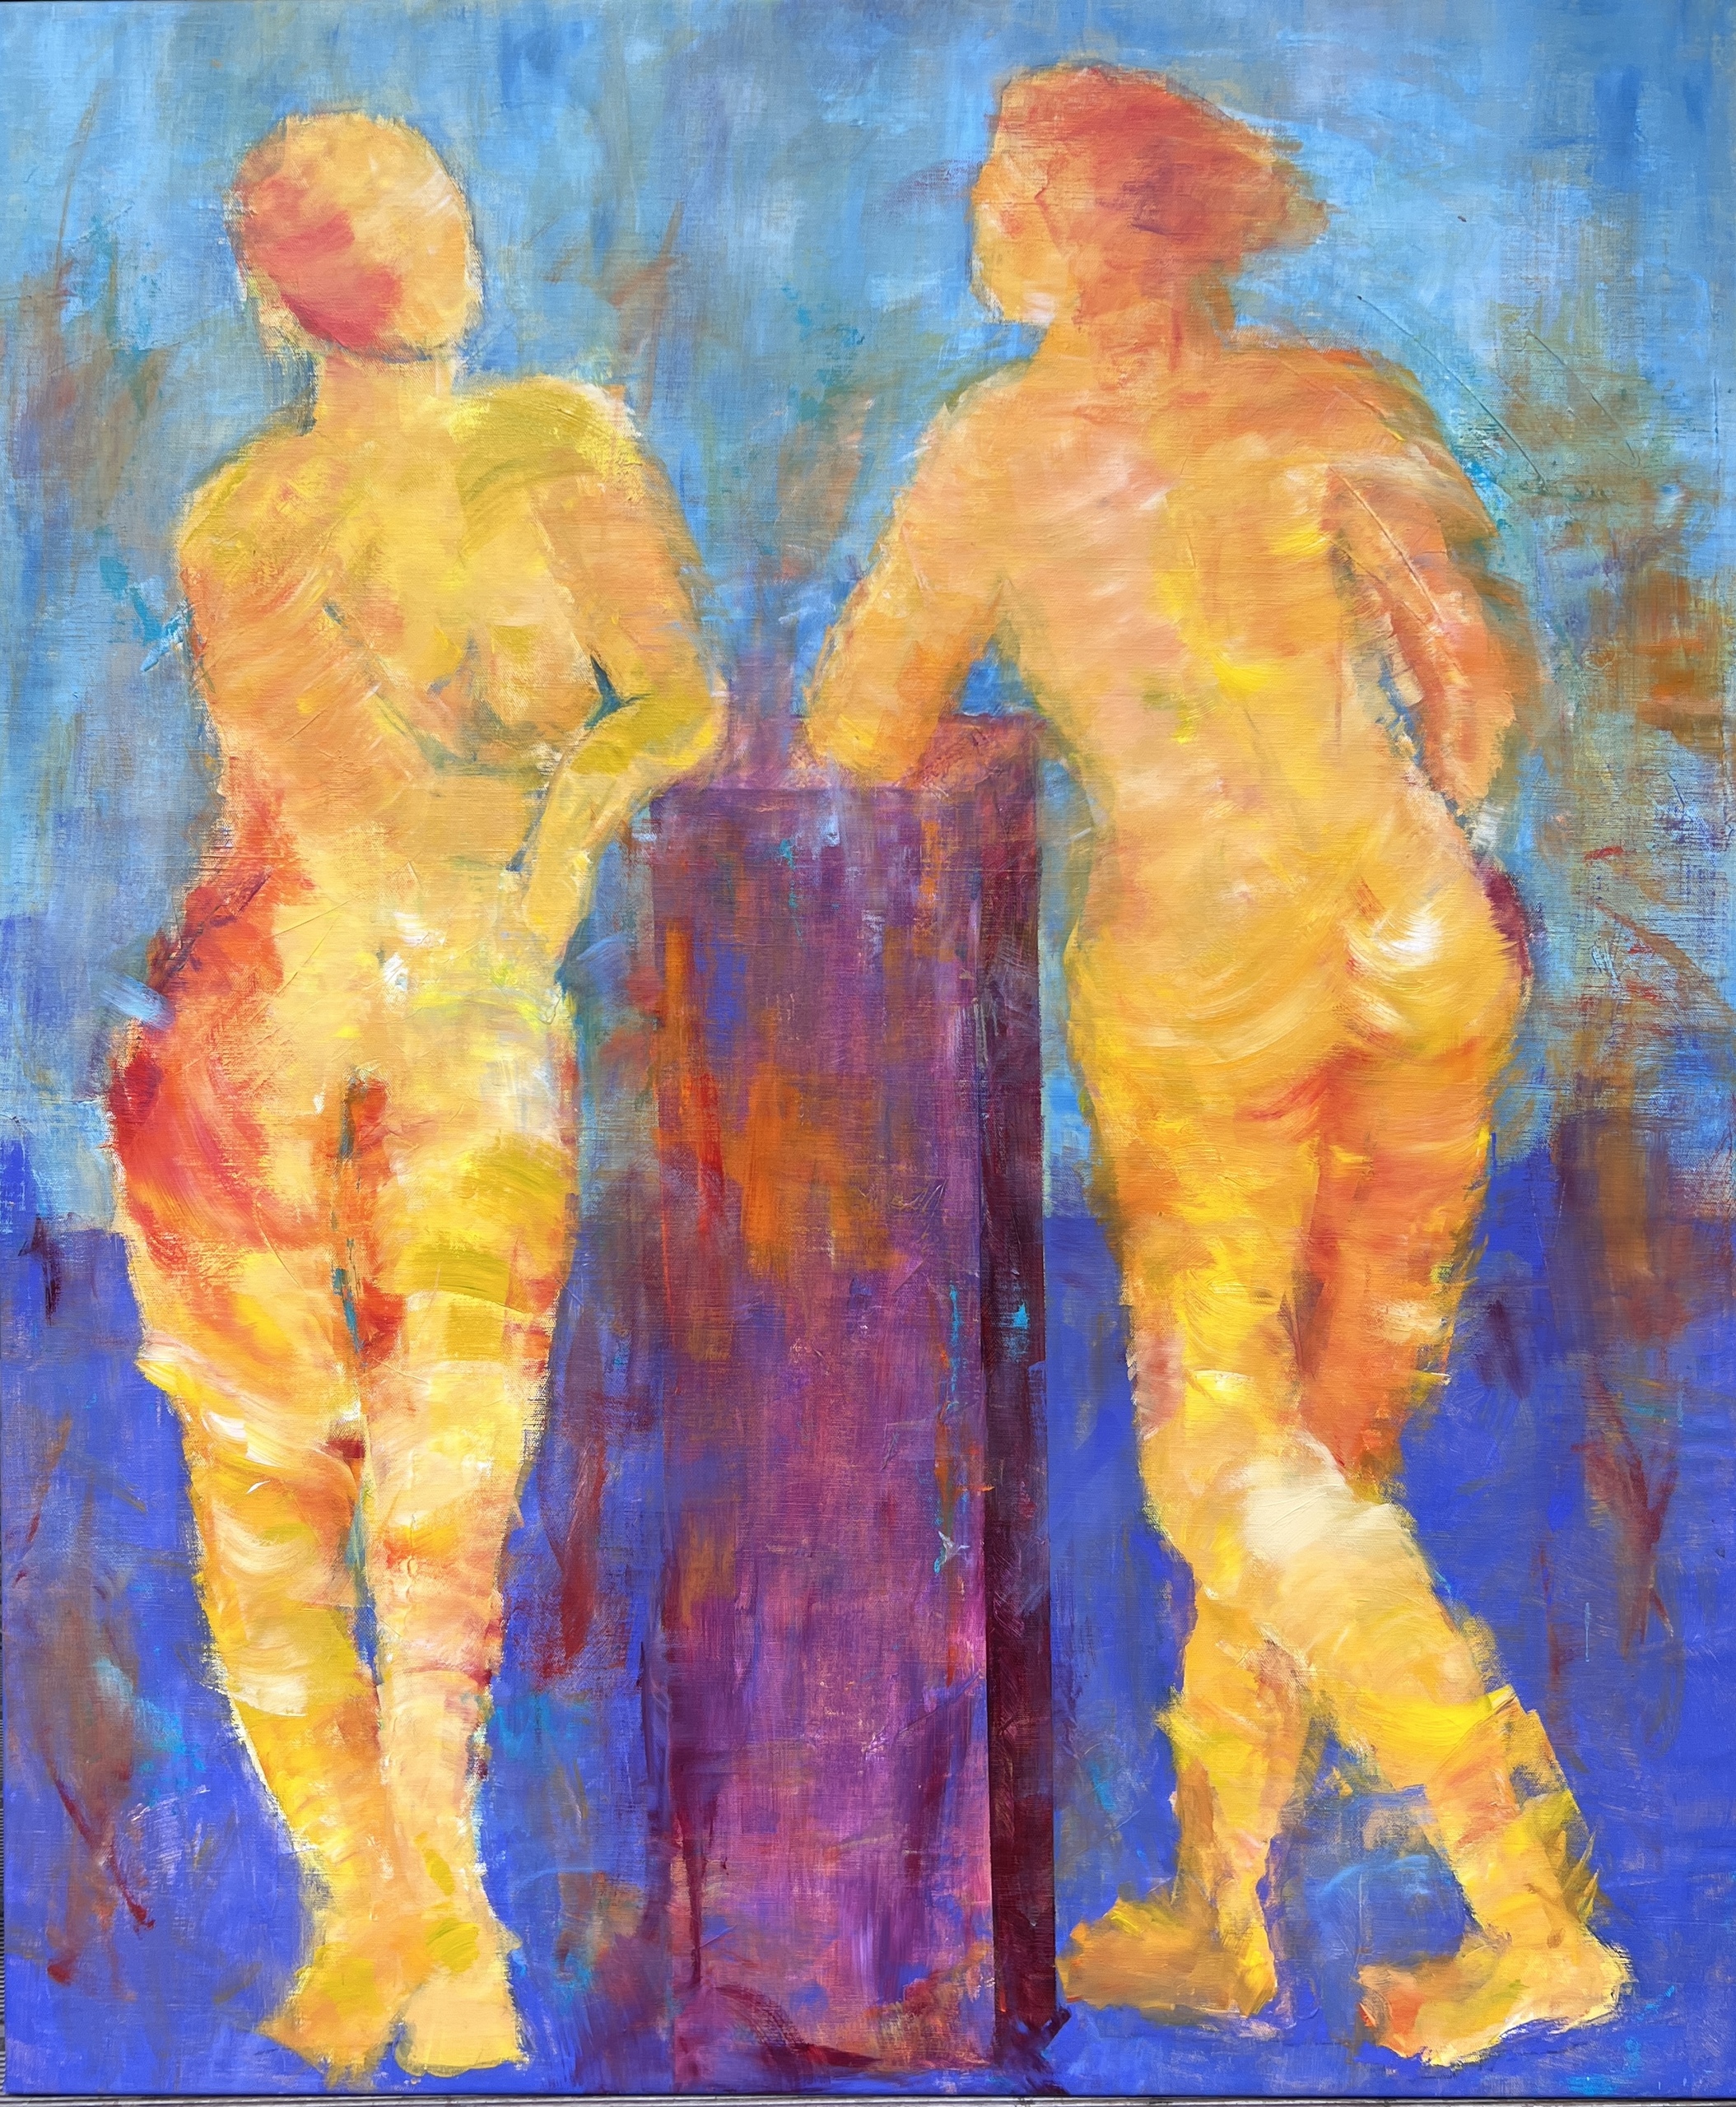 Abstrakt maleri hvor man ser to kvinder i snak i en klassisk komposition med et kompromiløs farvevalg og dynamiske penselstrøg